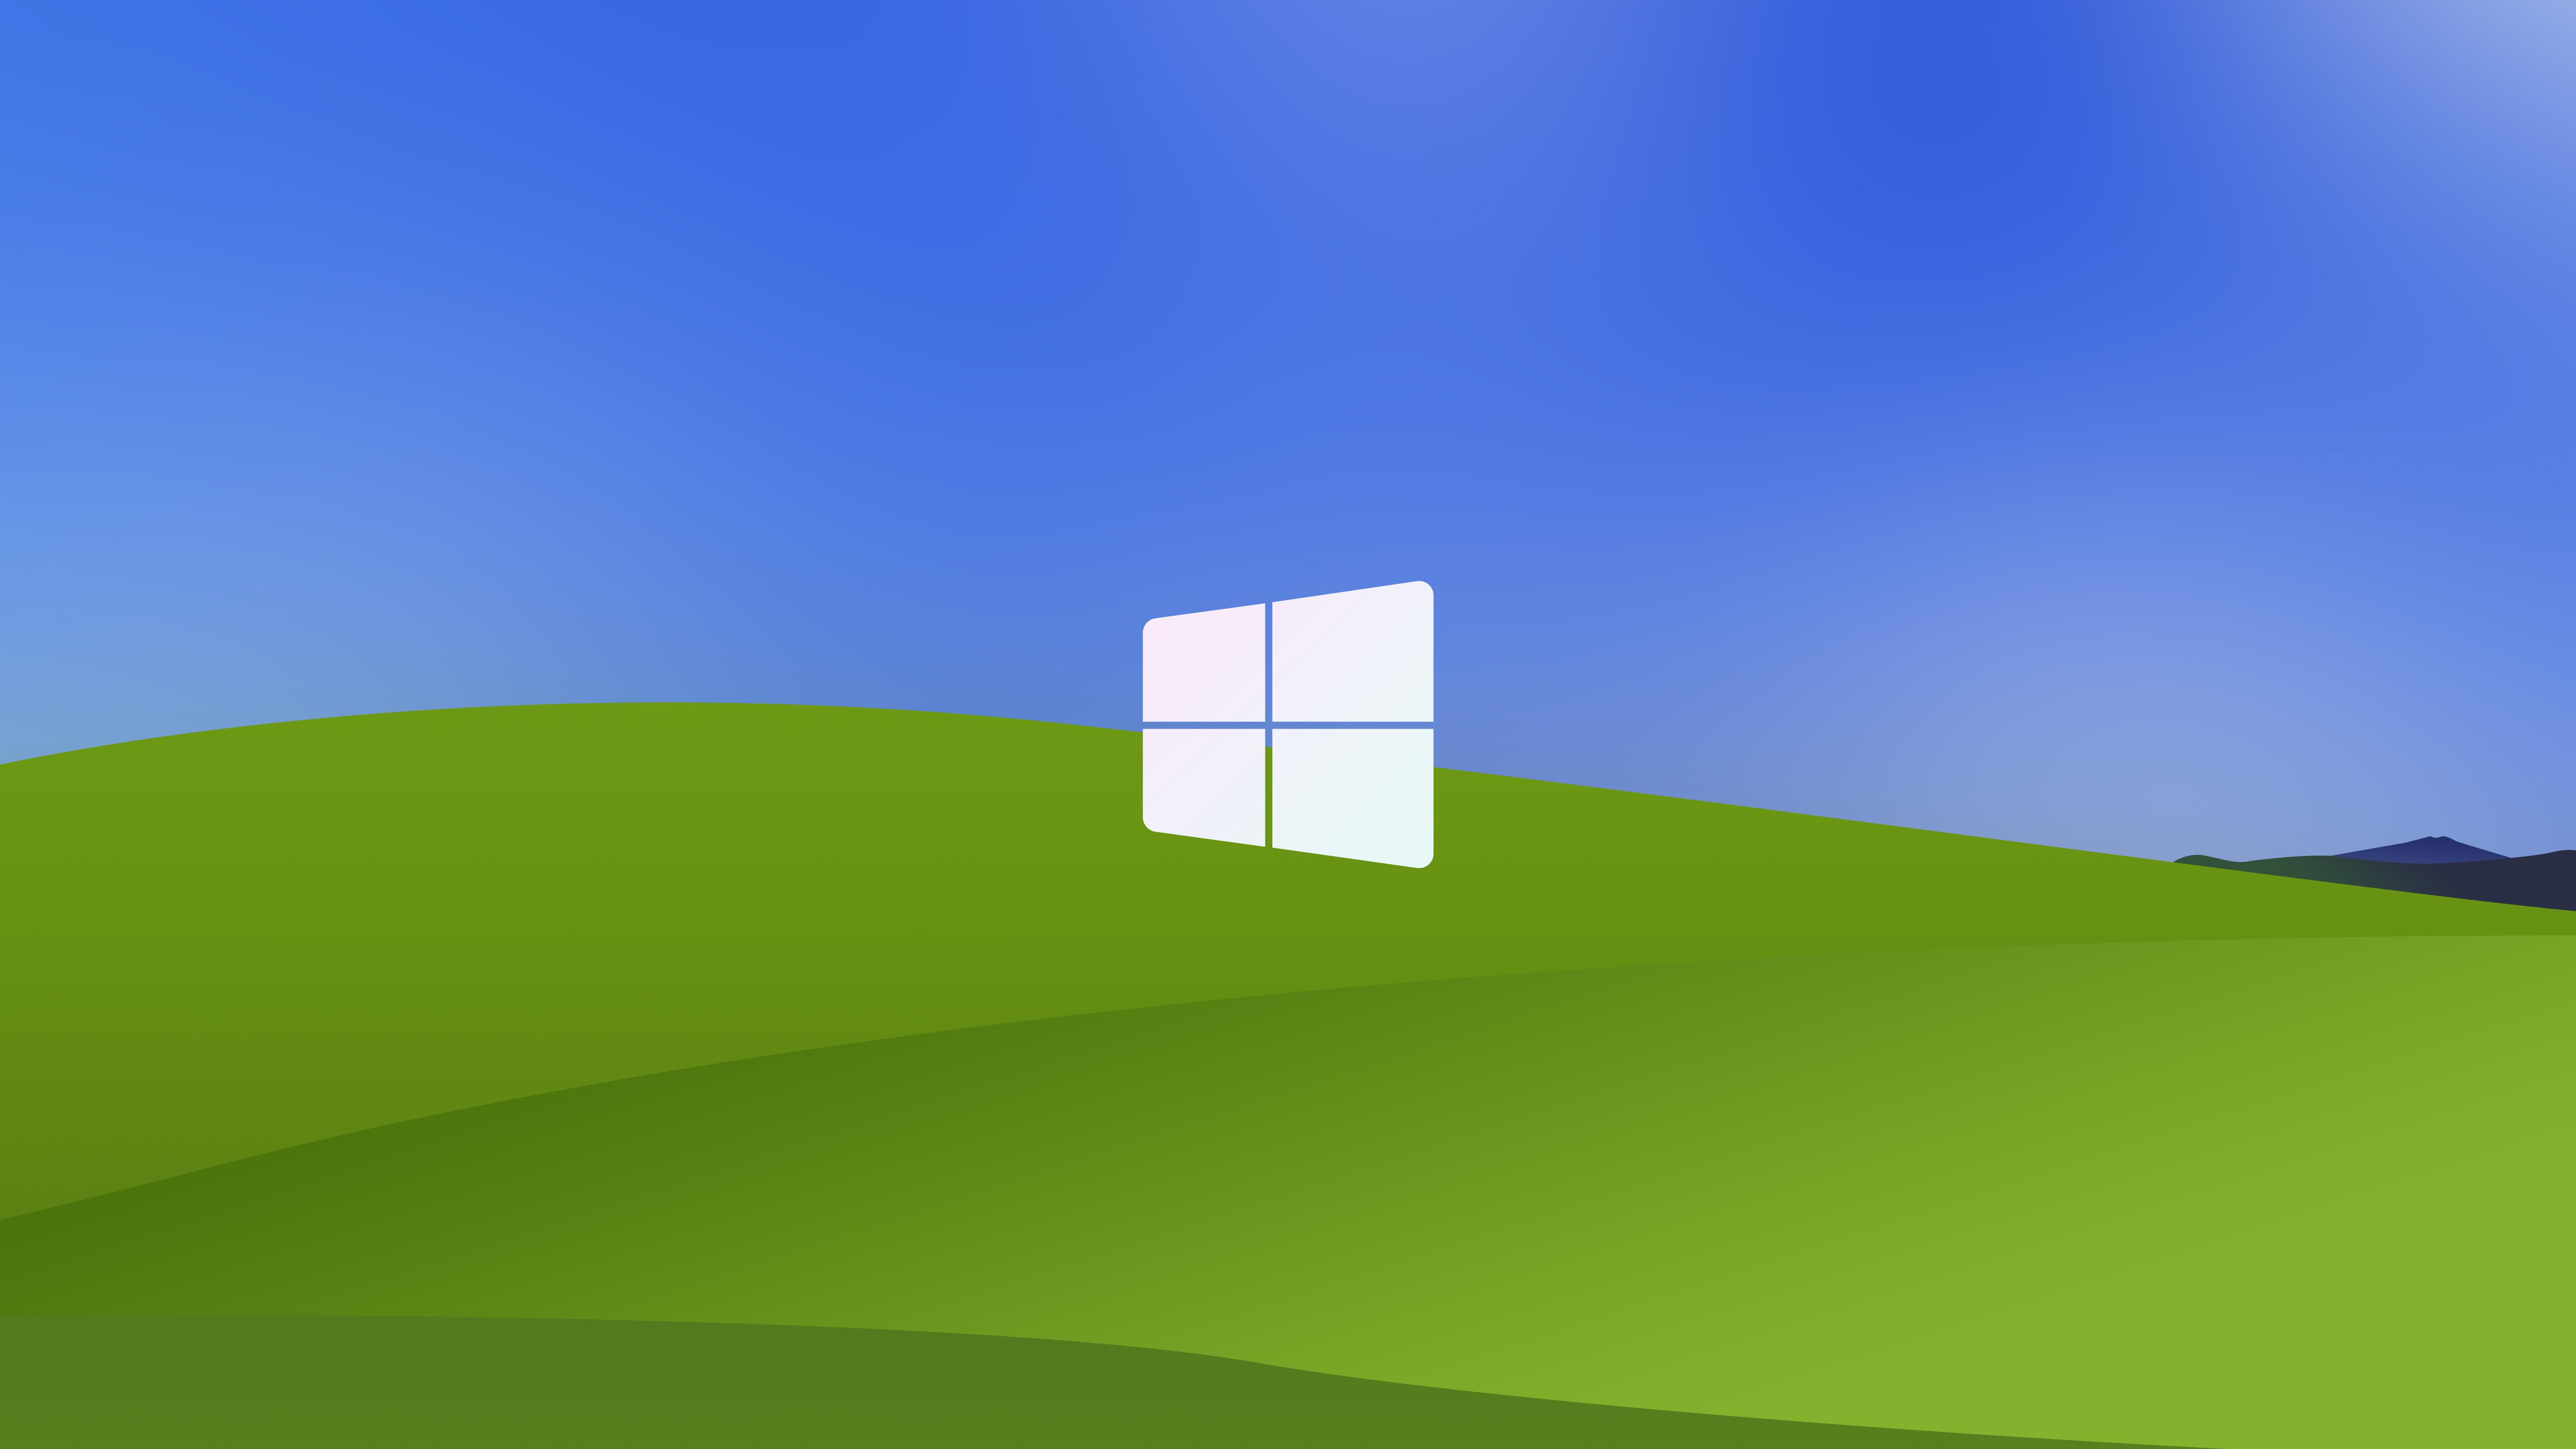 Hình nền Windows XP đã trở thành một phần không thể thiếu trong cuộc sống của các nhà yêu công nghệ. Từ đồng cỏ xanh mượt đến màn hình máy tính màu xanh đậm, các hình nền Windows XP đều mang đến sự thoải mái và giản đơn cho người sử dụng. Duyệt qua bộ sưu tập tuyệt vời này và tìm cho mình bức ảnh nền ưng ý nhất!